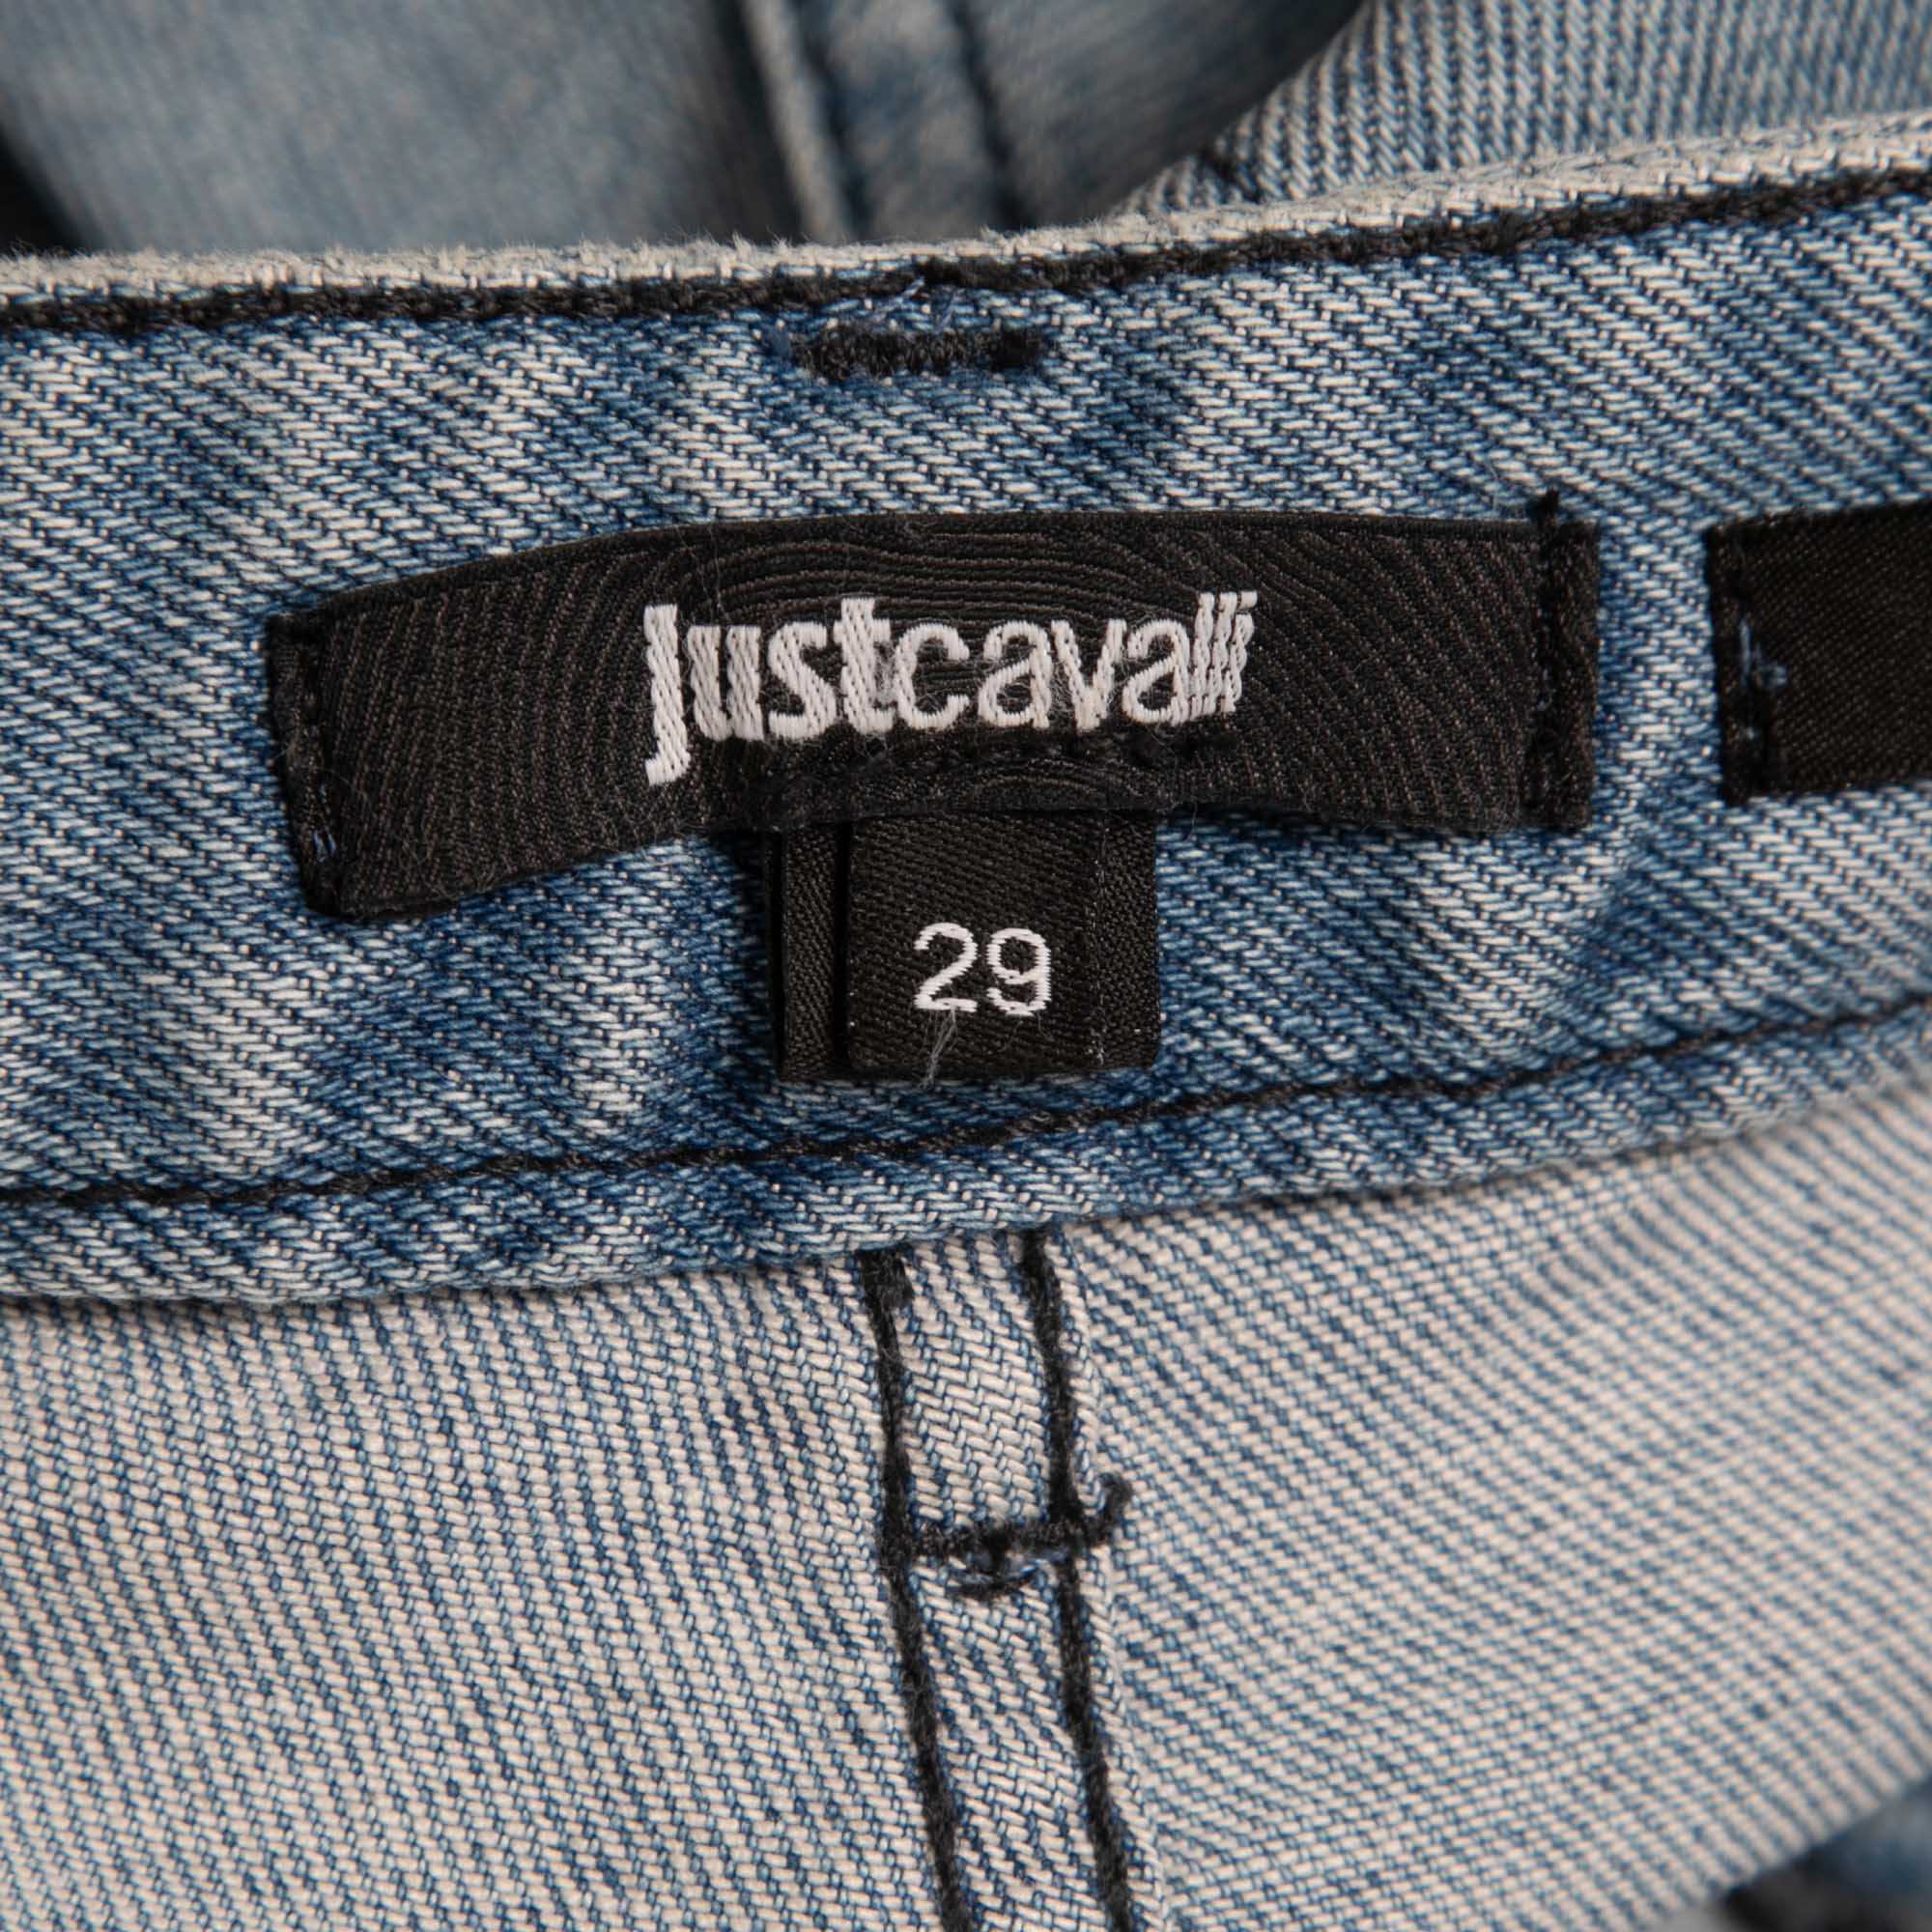 Just Cavalli Blue Distressed Denim Slim Fit Jeans M Waist 29